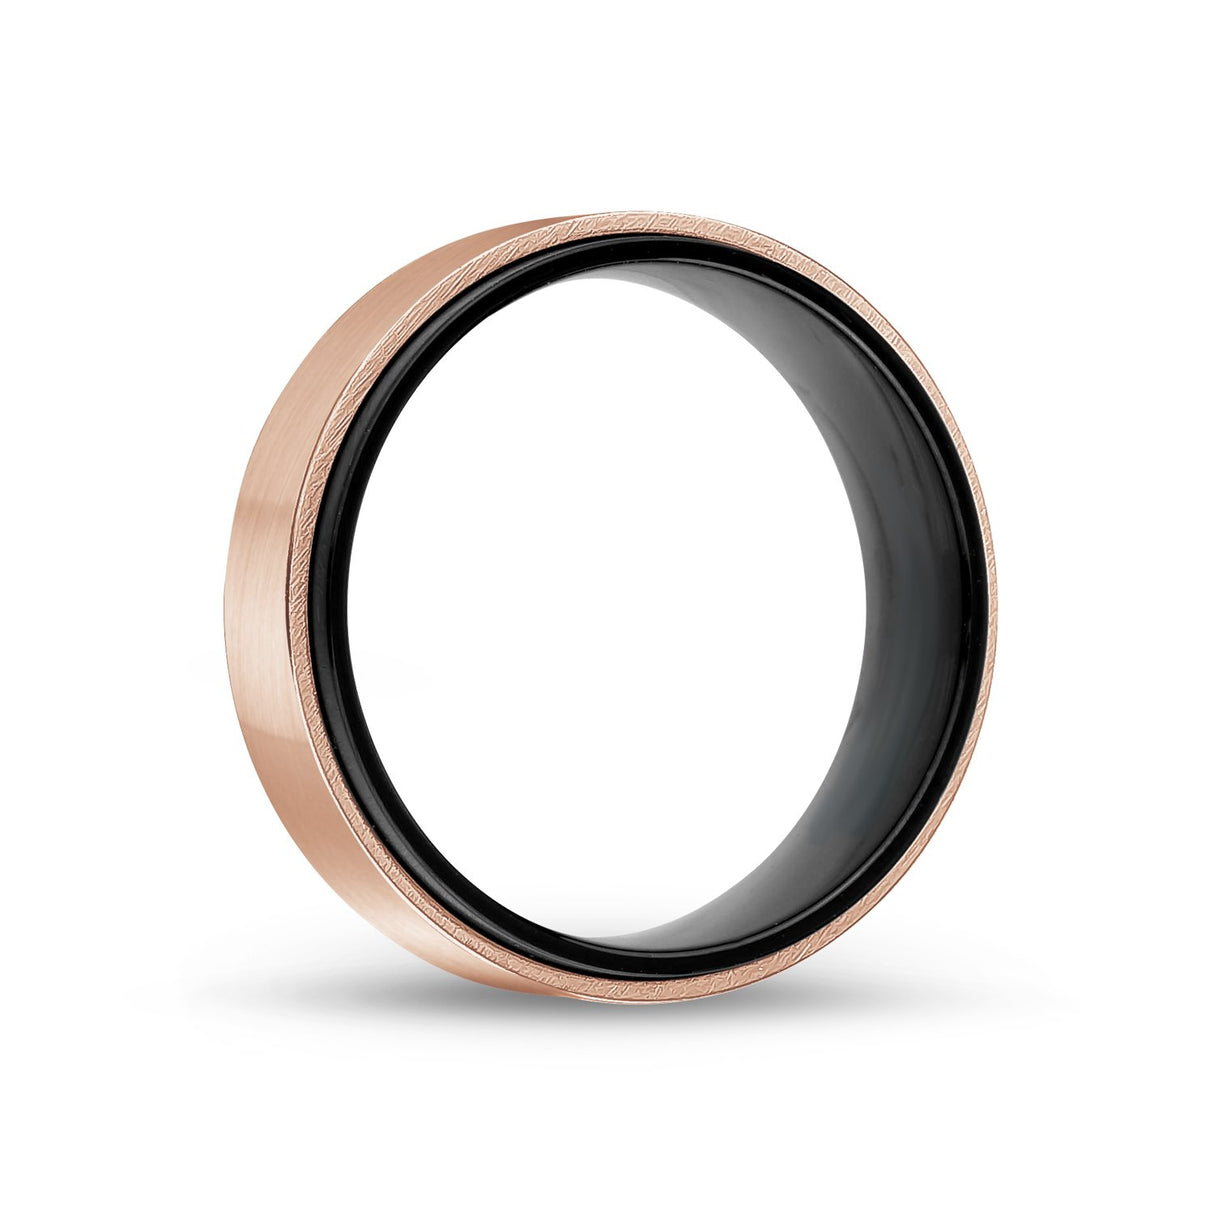 男士戒指 - 7mm 黑色 & 玫瑰金精鋼結婚戒指 - 可雕刻